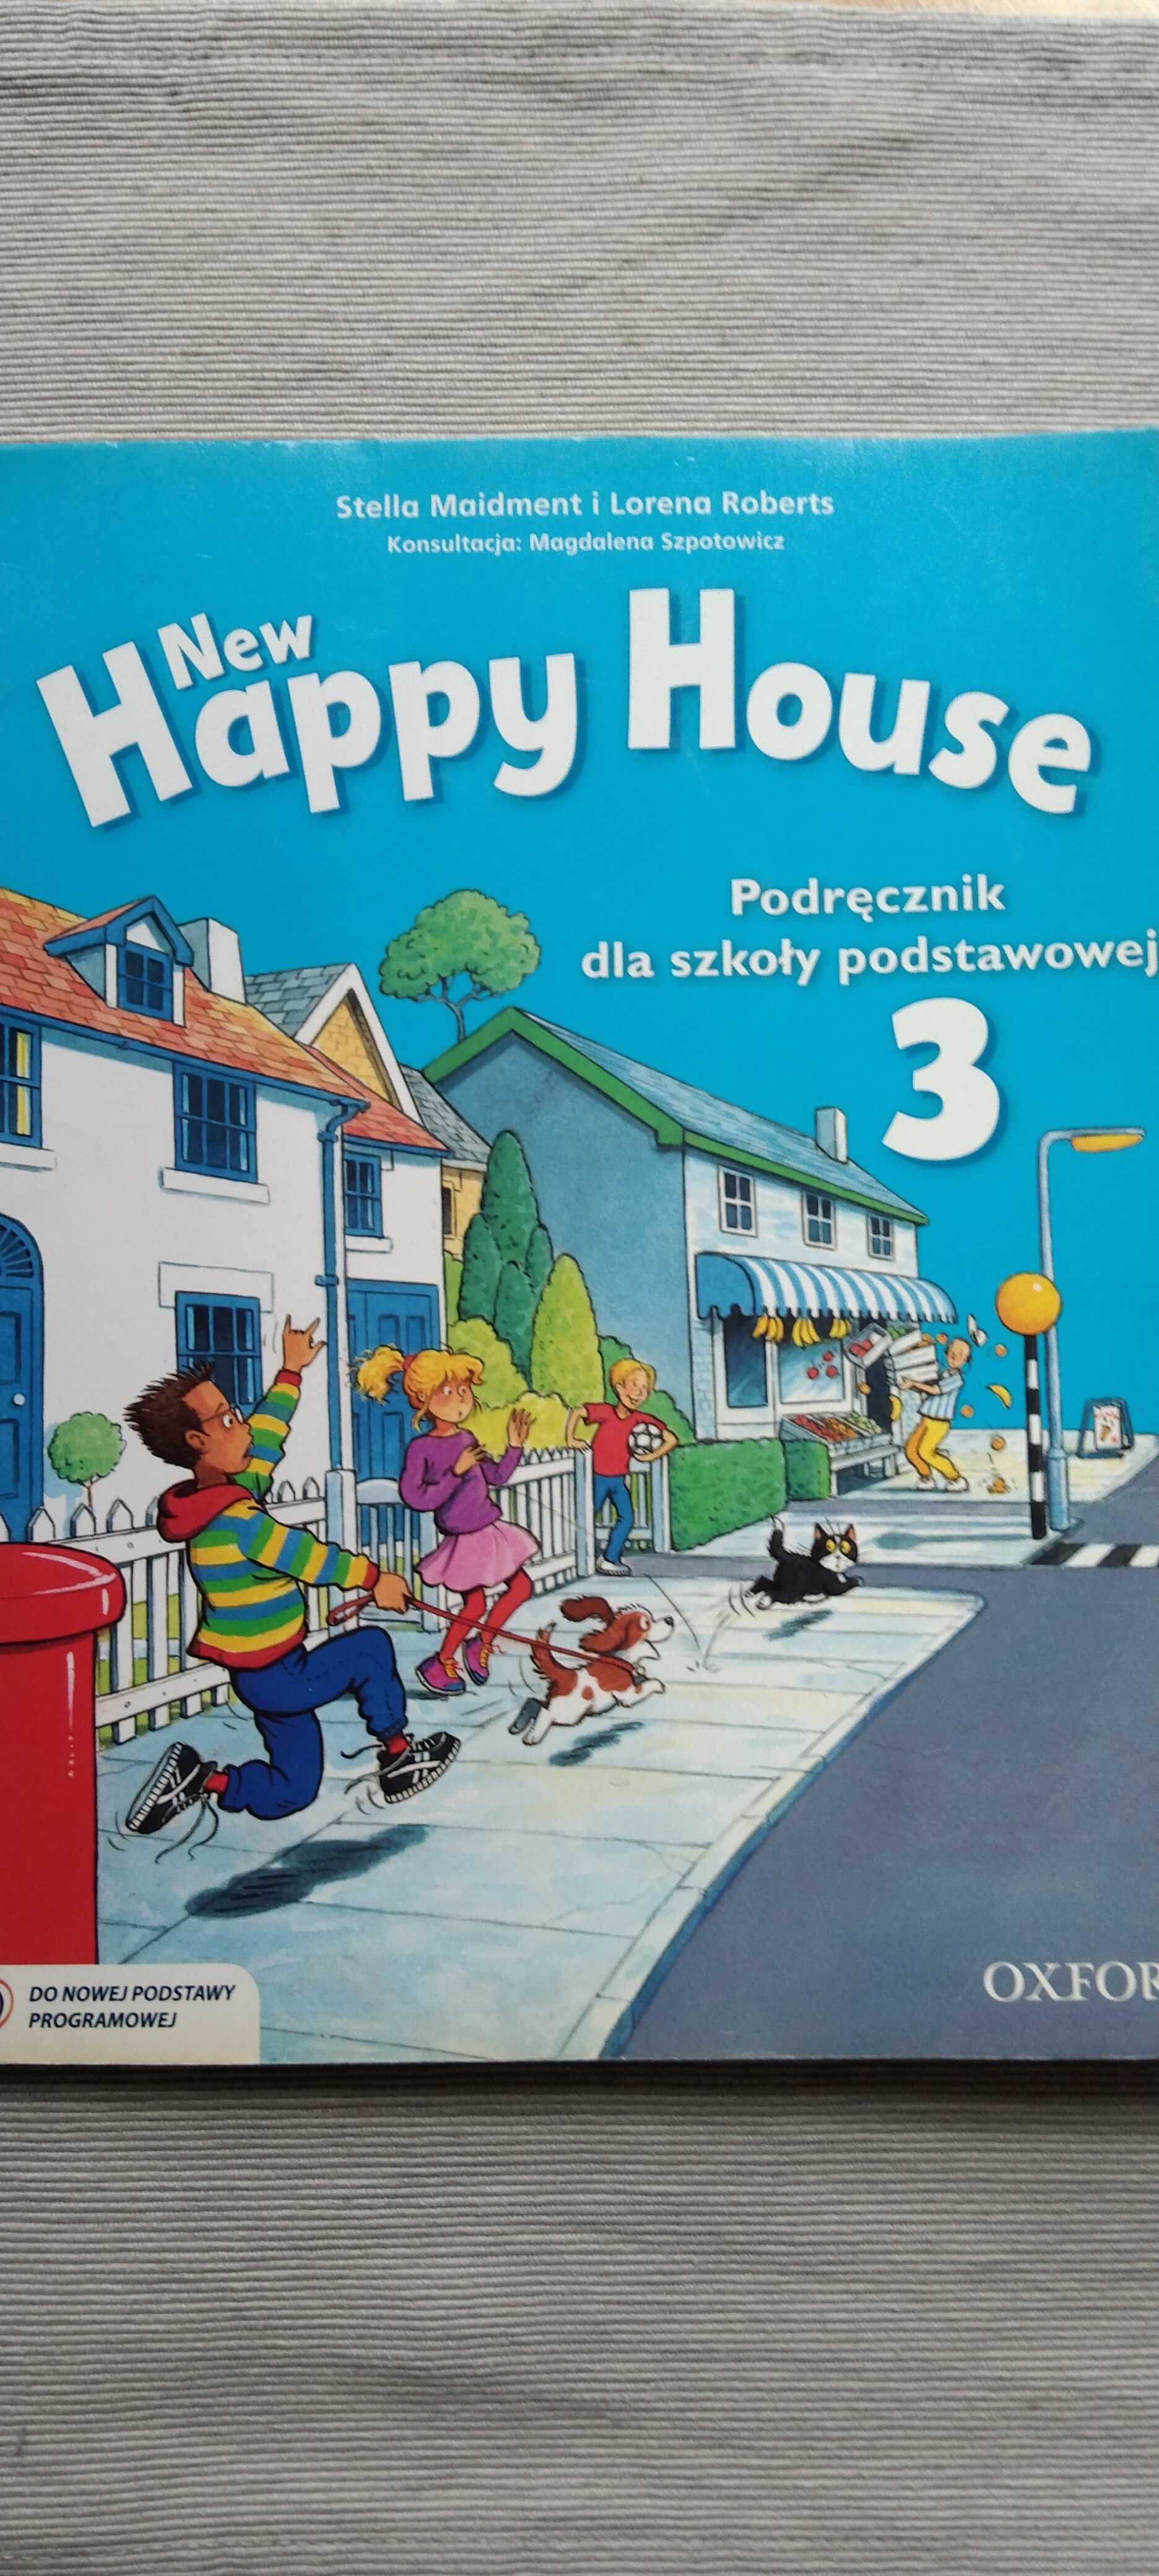 New Happy House 3 OXFORD podręcznik szkoła podstawowa